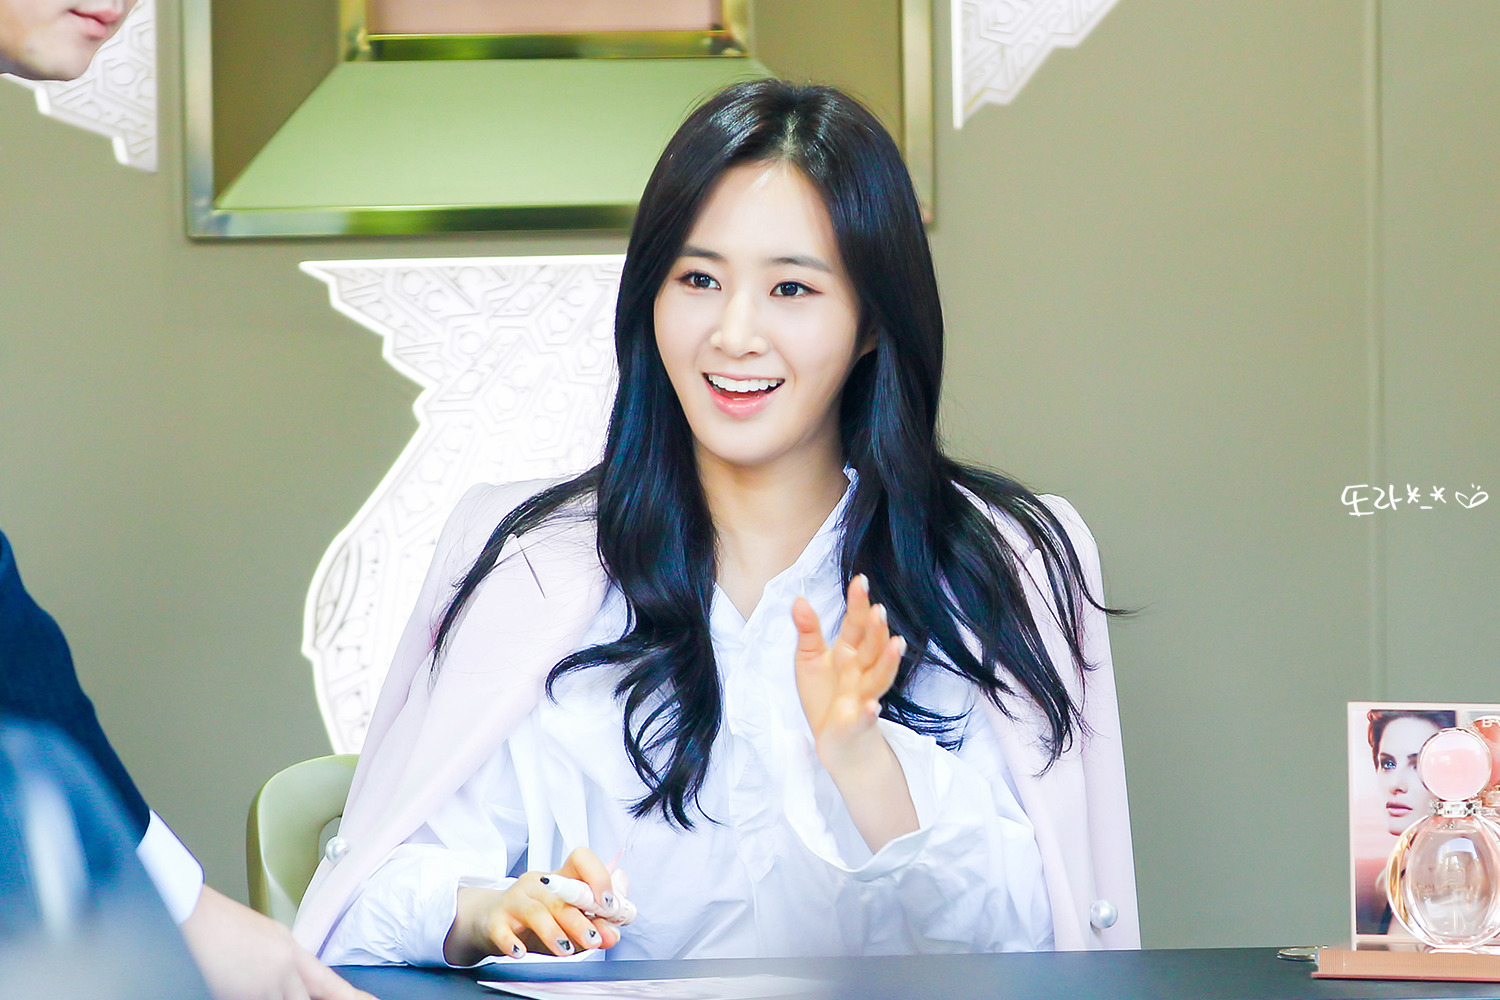 [PIC][09-10-2016]Yuri tham dự buổi Fansign thứ 2 cho thương hiệu nước hoa "BVLGARI Rose Goldea" tại Myeongdong Lotte Duty Free vào chiều nay - Page 4 243B39485957A4C90BB2B3